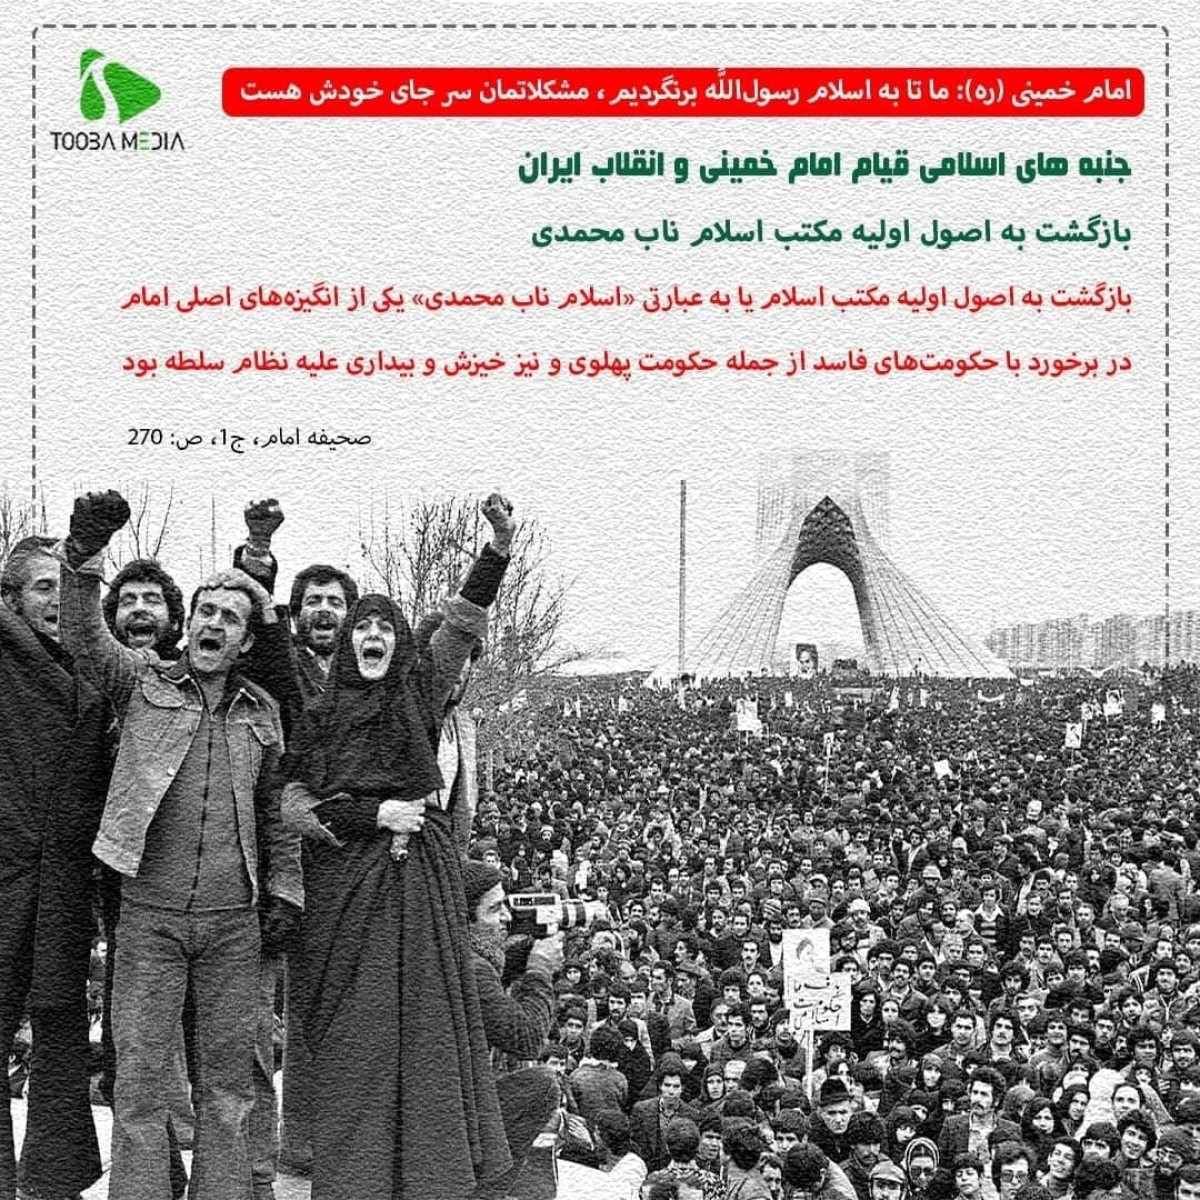 جنبه های اسلامی قیام امام خمینی و انقلاب ایران